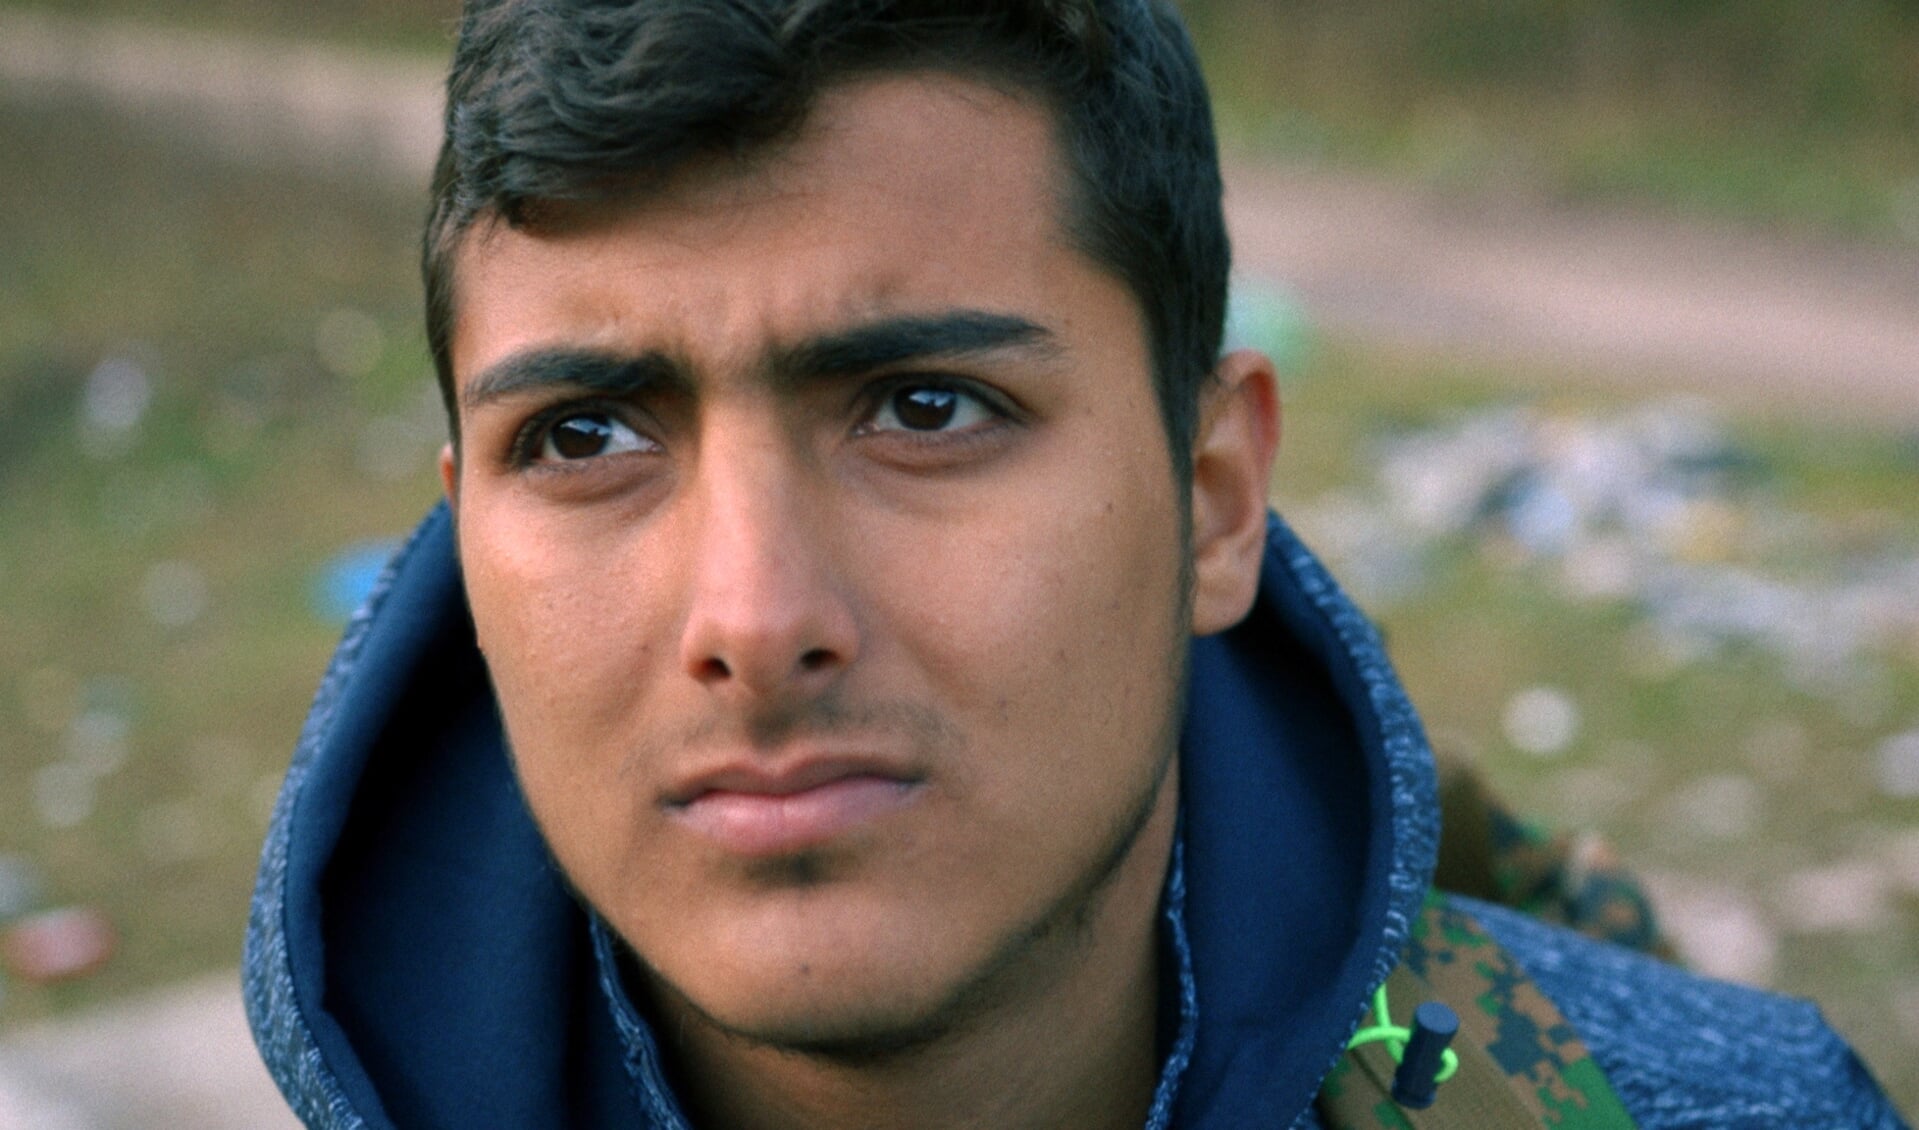 De film 'Shadow Game' gaat over de ervaringen van jonge vluchtelingen door Europa. 